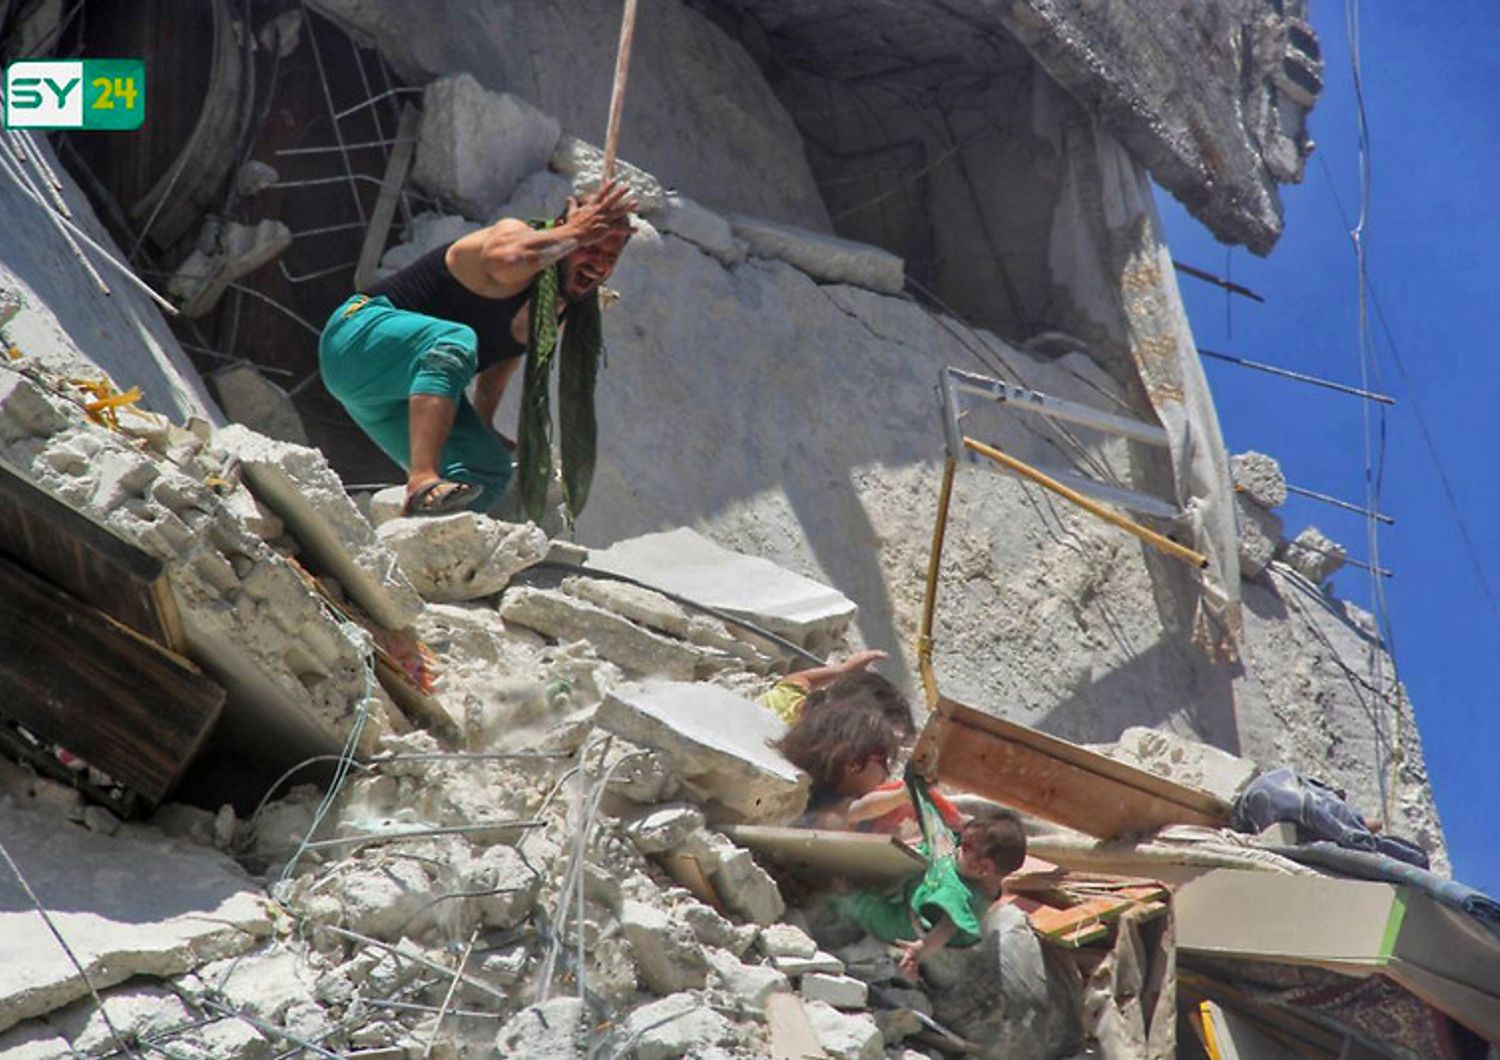 Le bambine intrappolate sotto le macerie di un bombardamento nella provincia di Idlib